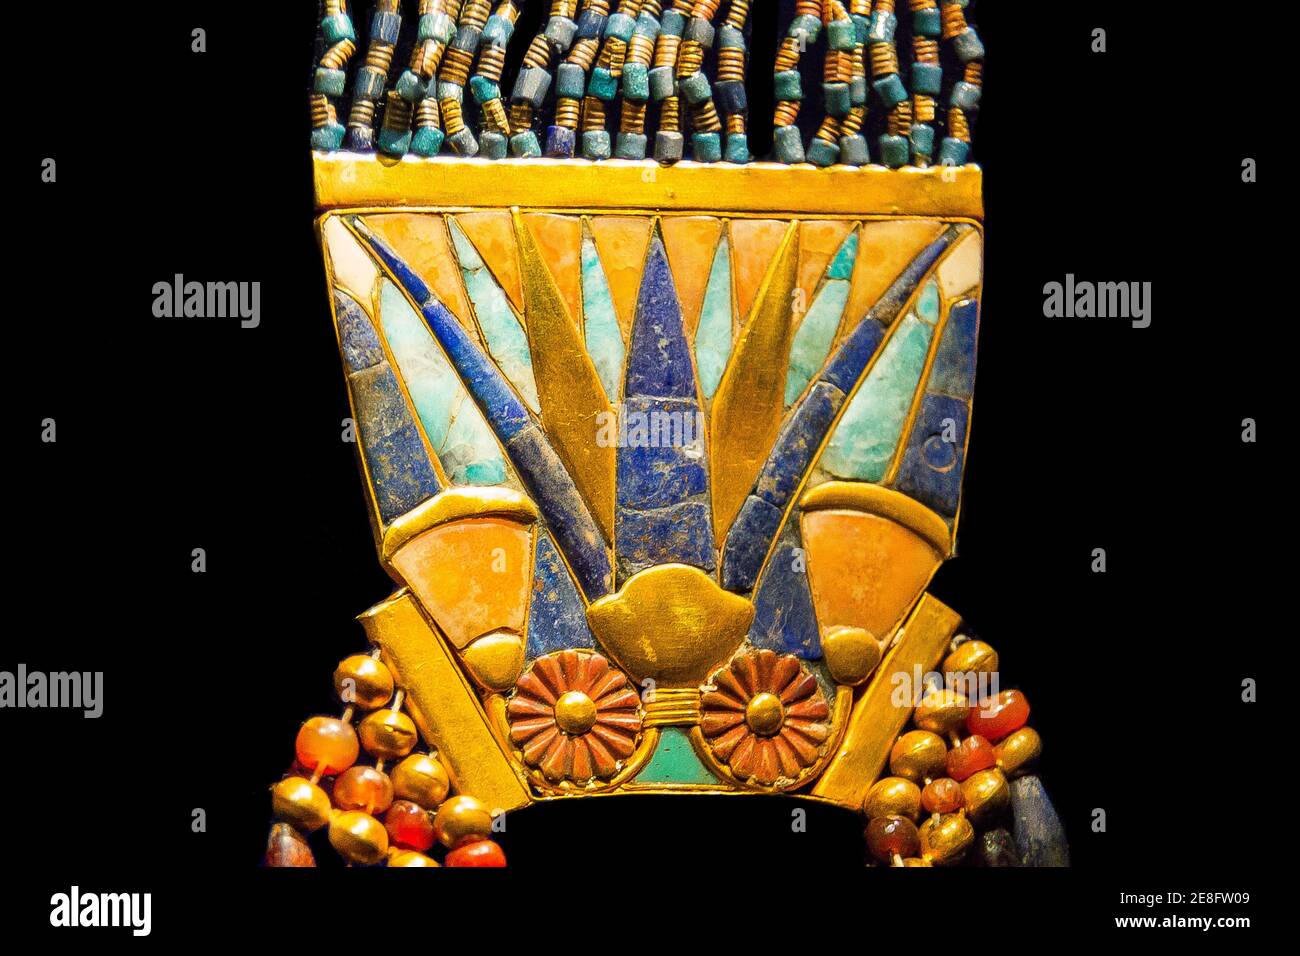 Ägypten, Tutanchamon Schmuck, aus seinem Grab in Luxor, Gegengewicht eines Brustkorbs : Rosetten, Perlen, Lotusblüten und Knospen. Stockfoto